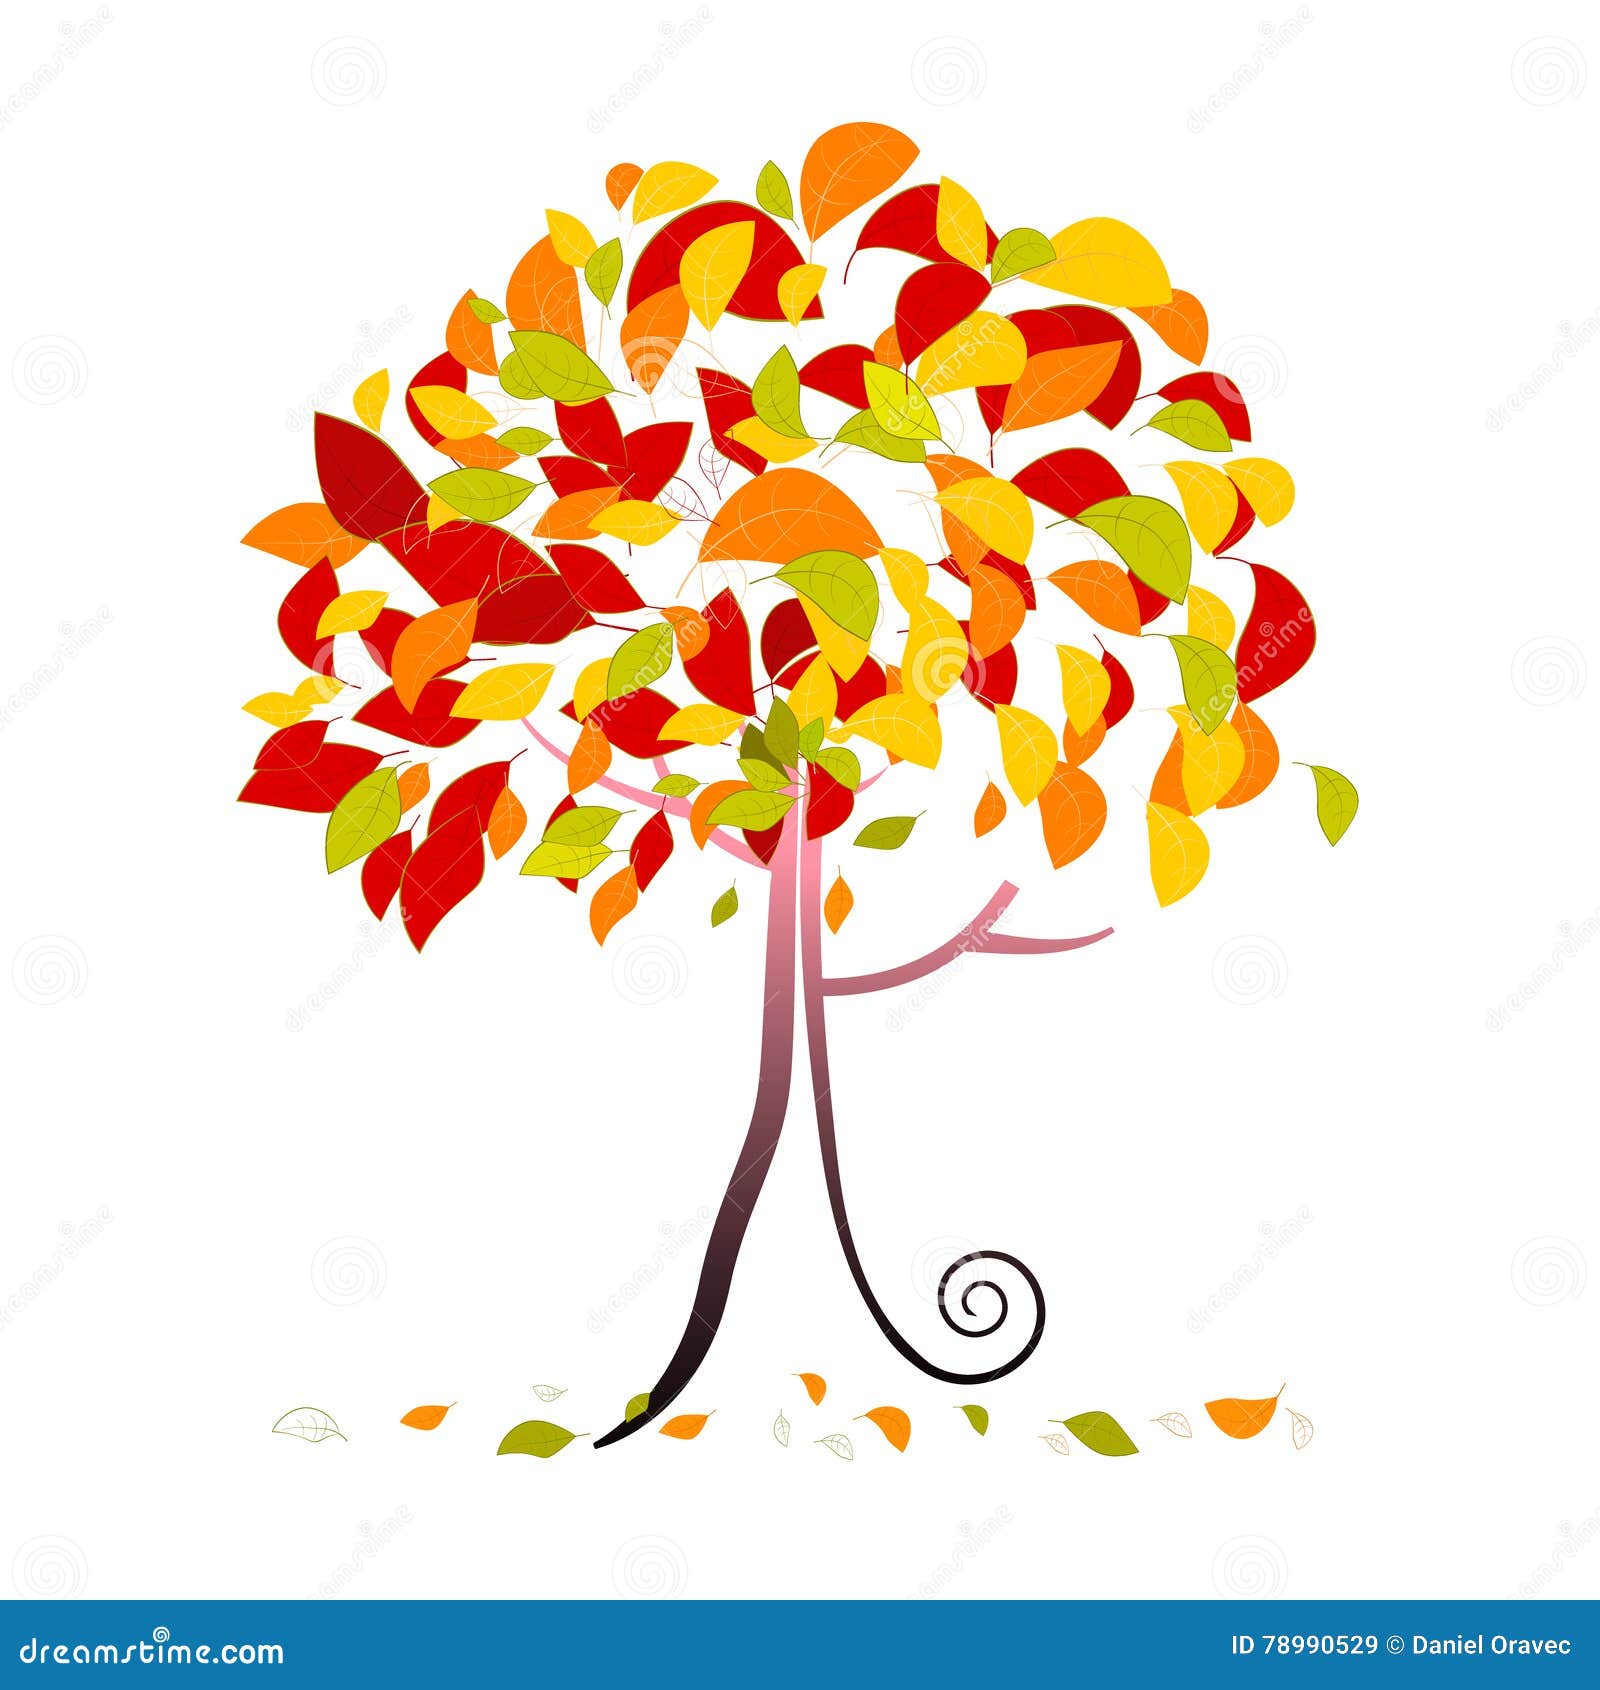 Tree Illustration - Abstract Vector Autumn Tree Stock Vector ...